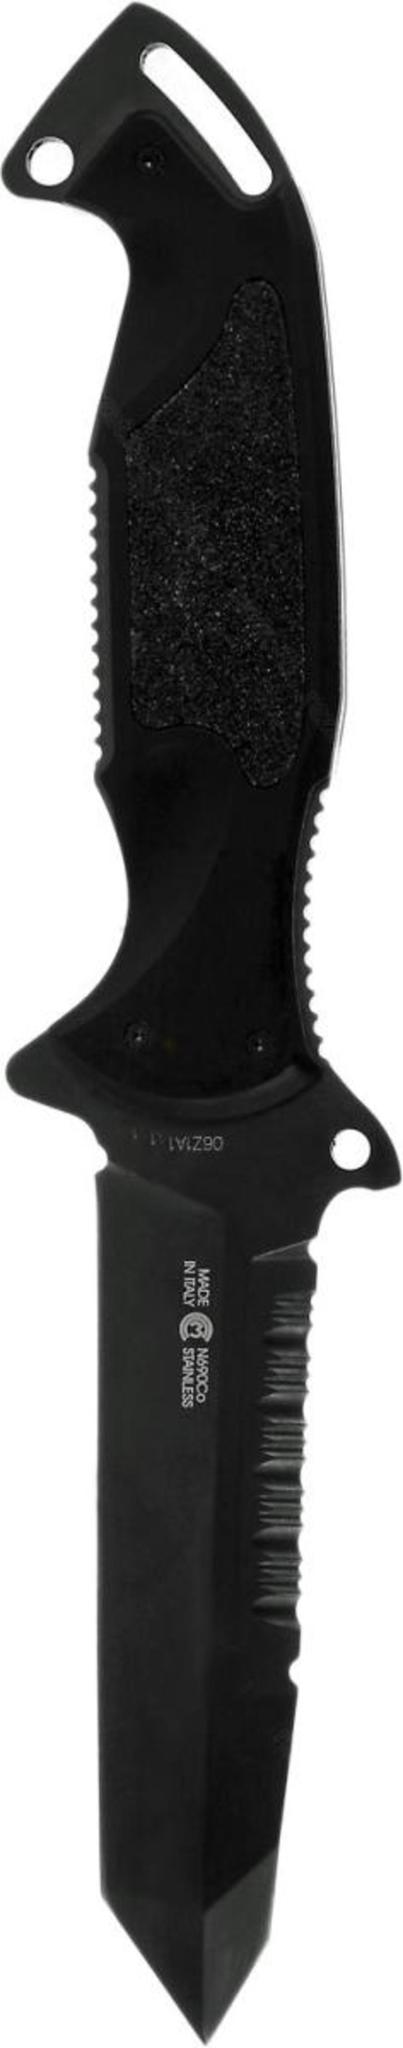 Нож с фиксированным клинком Remington Зулу I (Zulu) RM895FT DLC